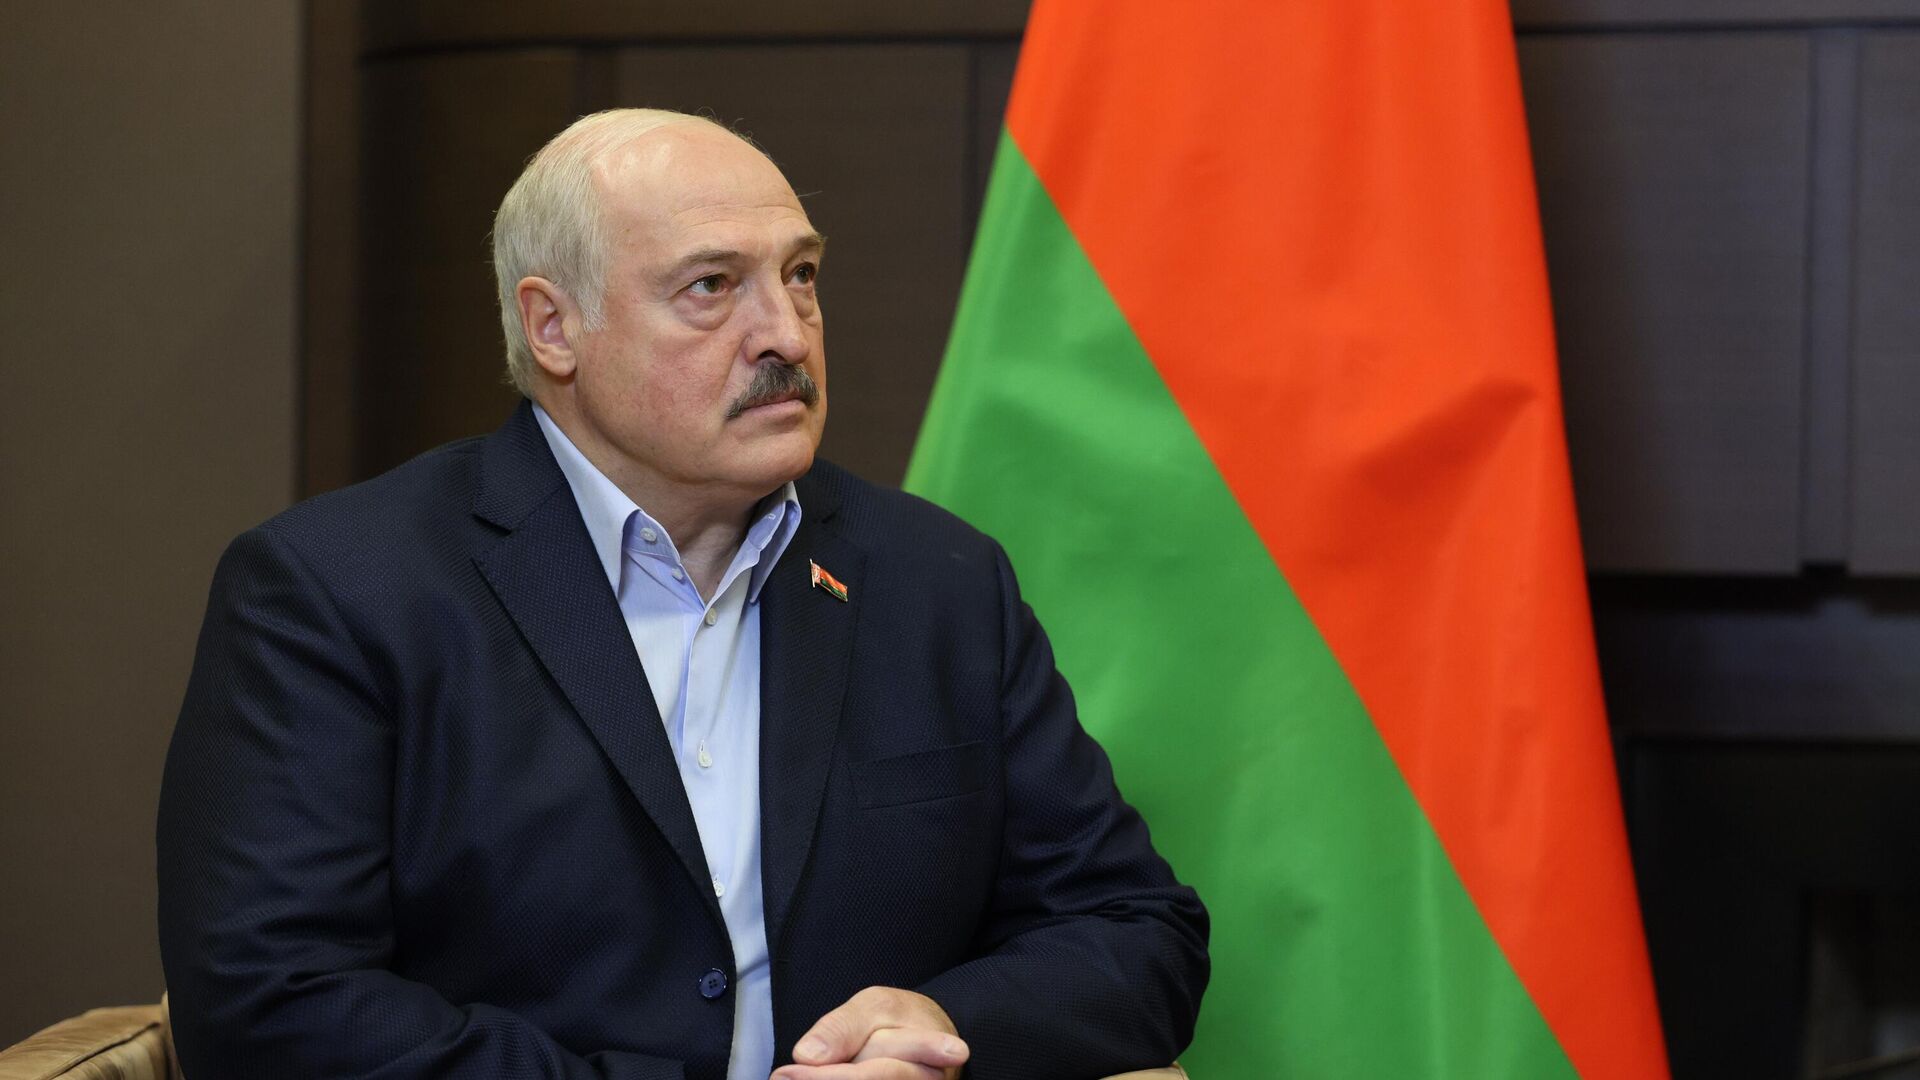 Что стоит за визитом Лукашенко в Китай? - МНЕНИЕ ЮРИЯ ШЕВЦОВА